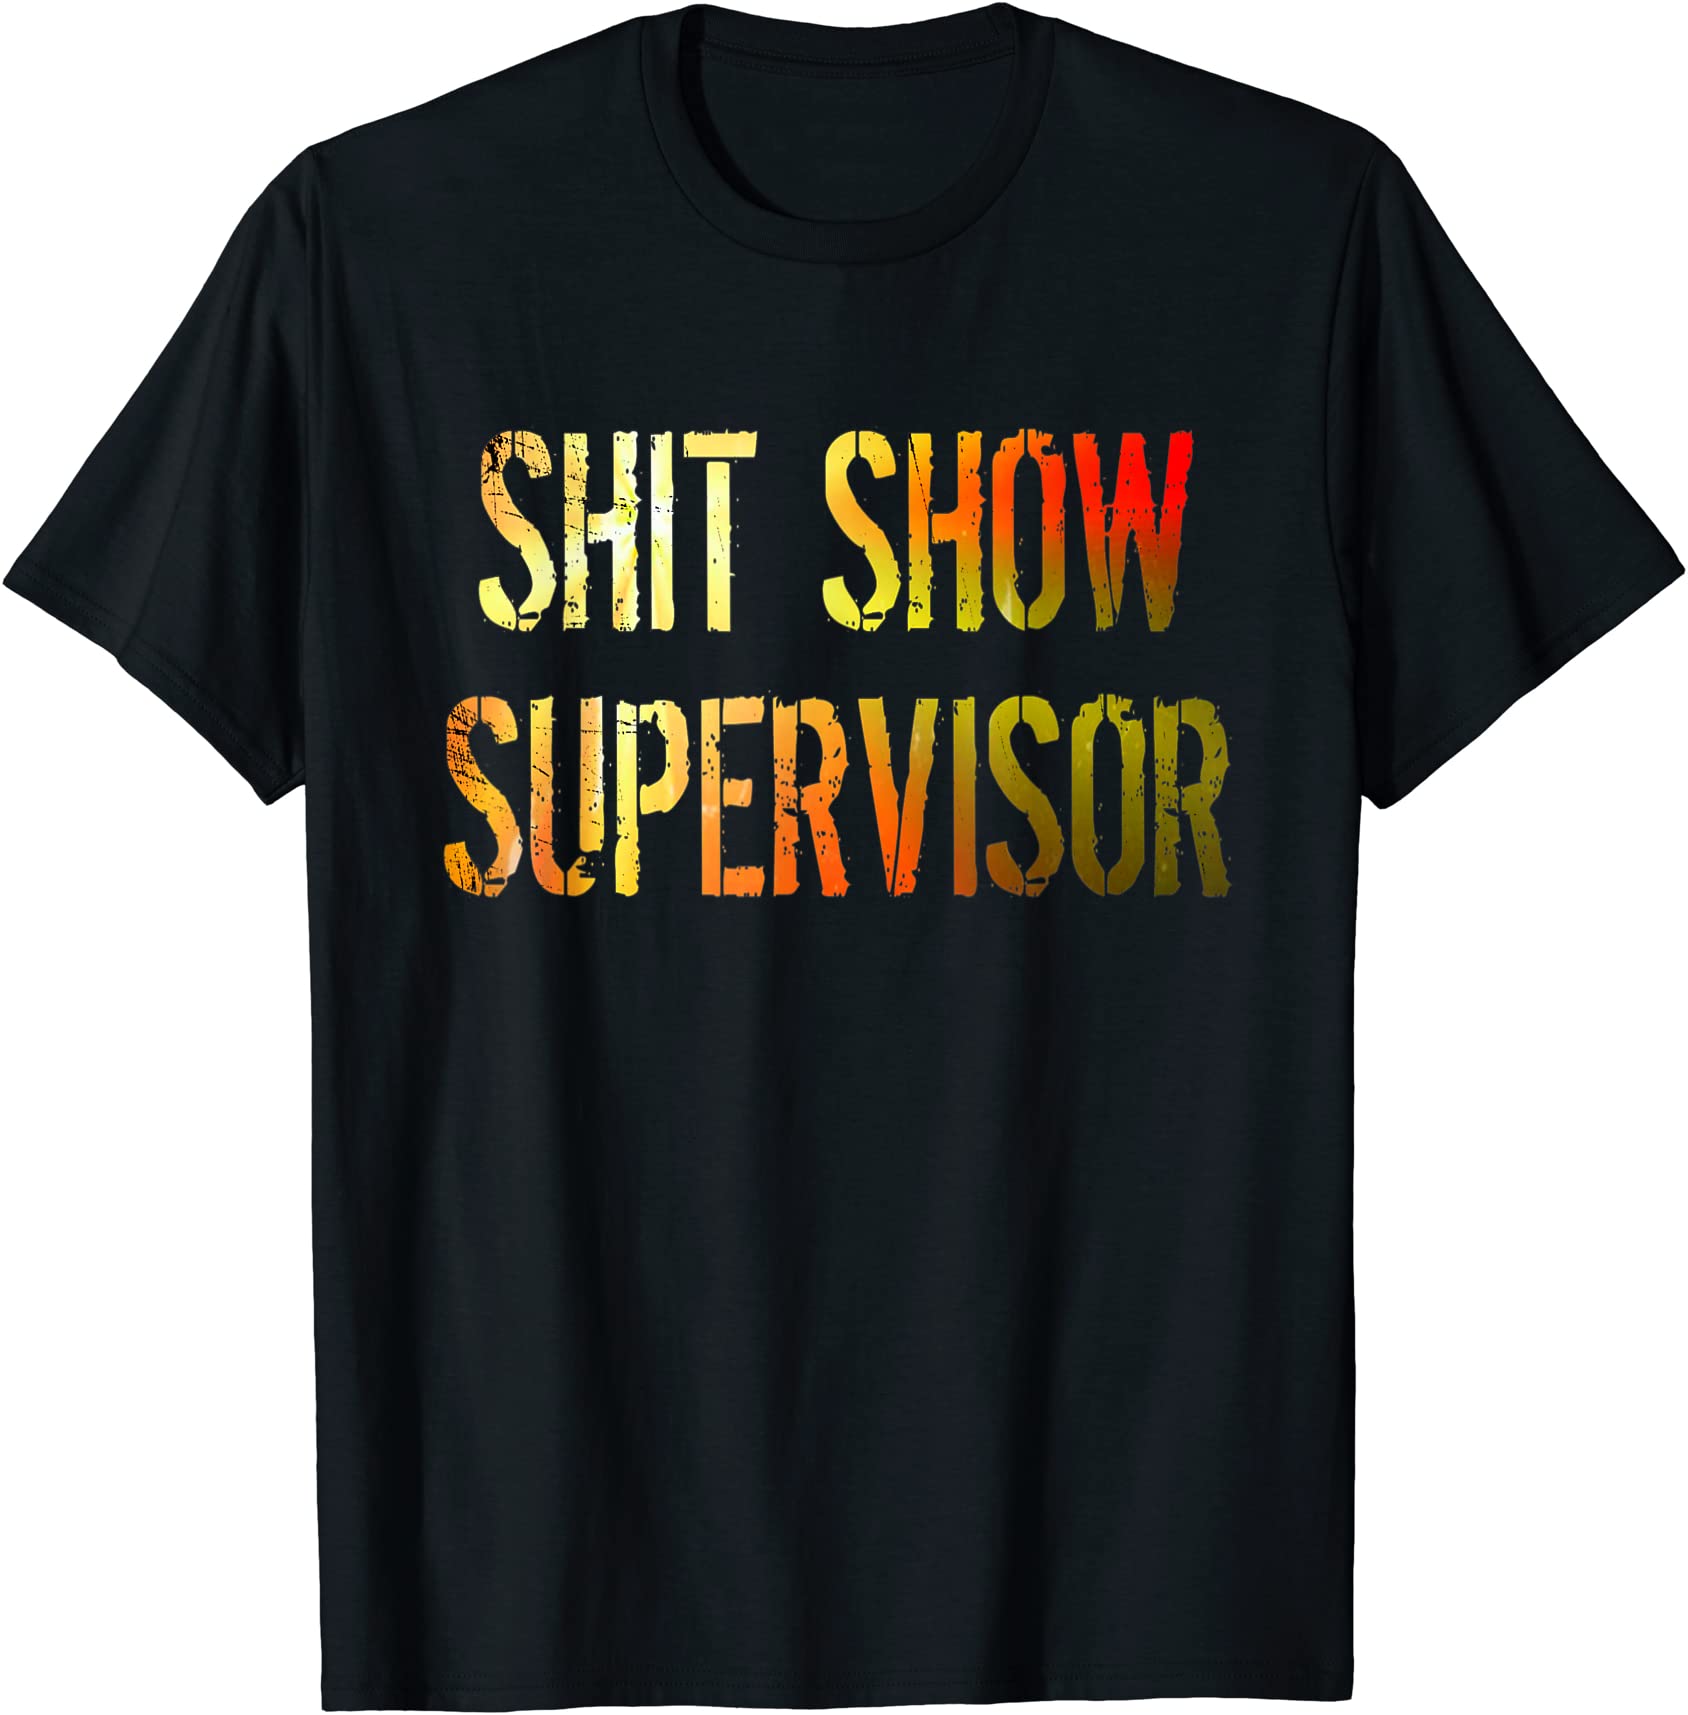 shit show supervisor boss manager funny gift t shirt men - Buy t-shirt ...